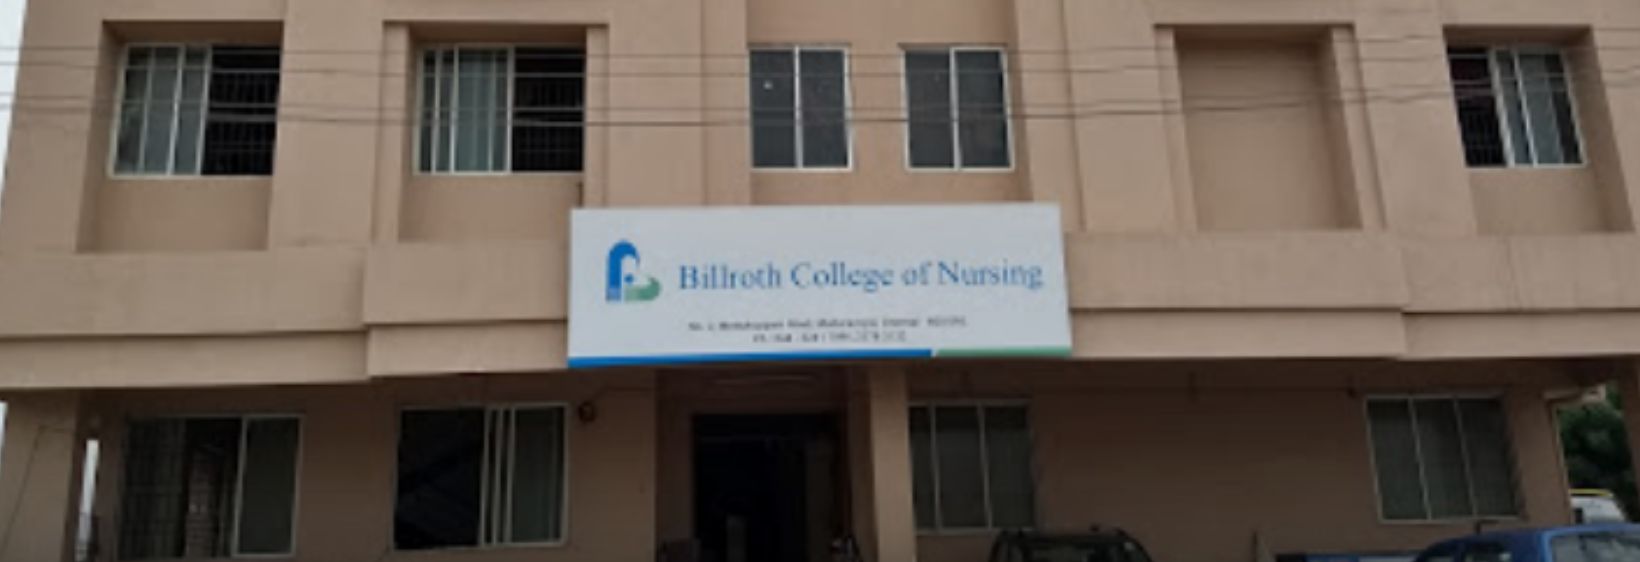 Billroth College of Nursing - Maduravoil, Chennai